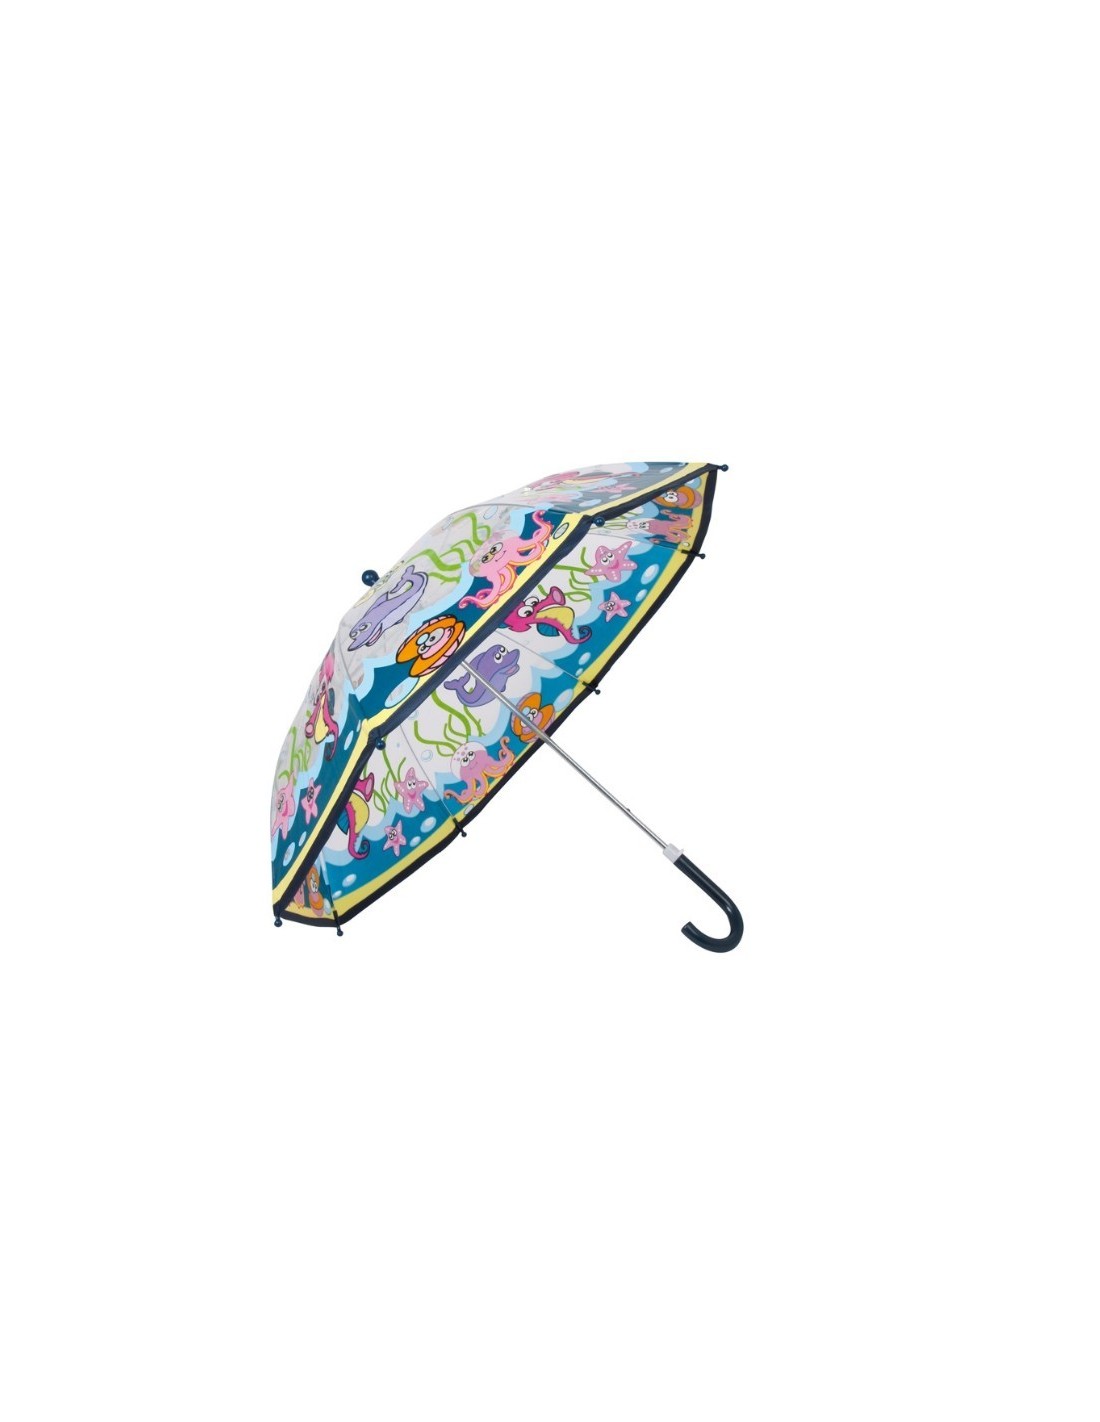 Paraguas infantil con tela transparente mundo submarino. Medidas: 57xØ67 cm.